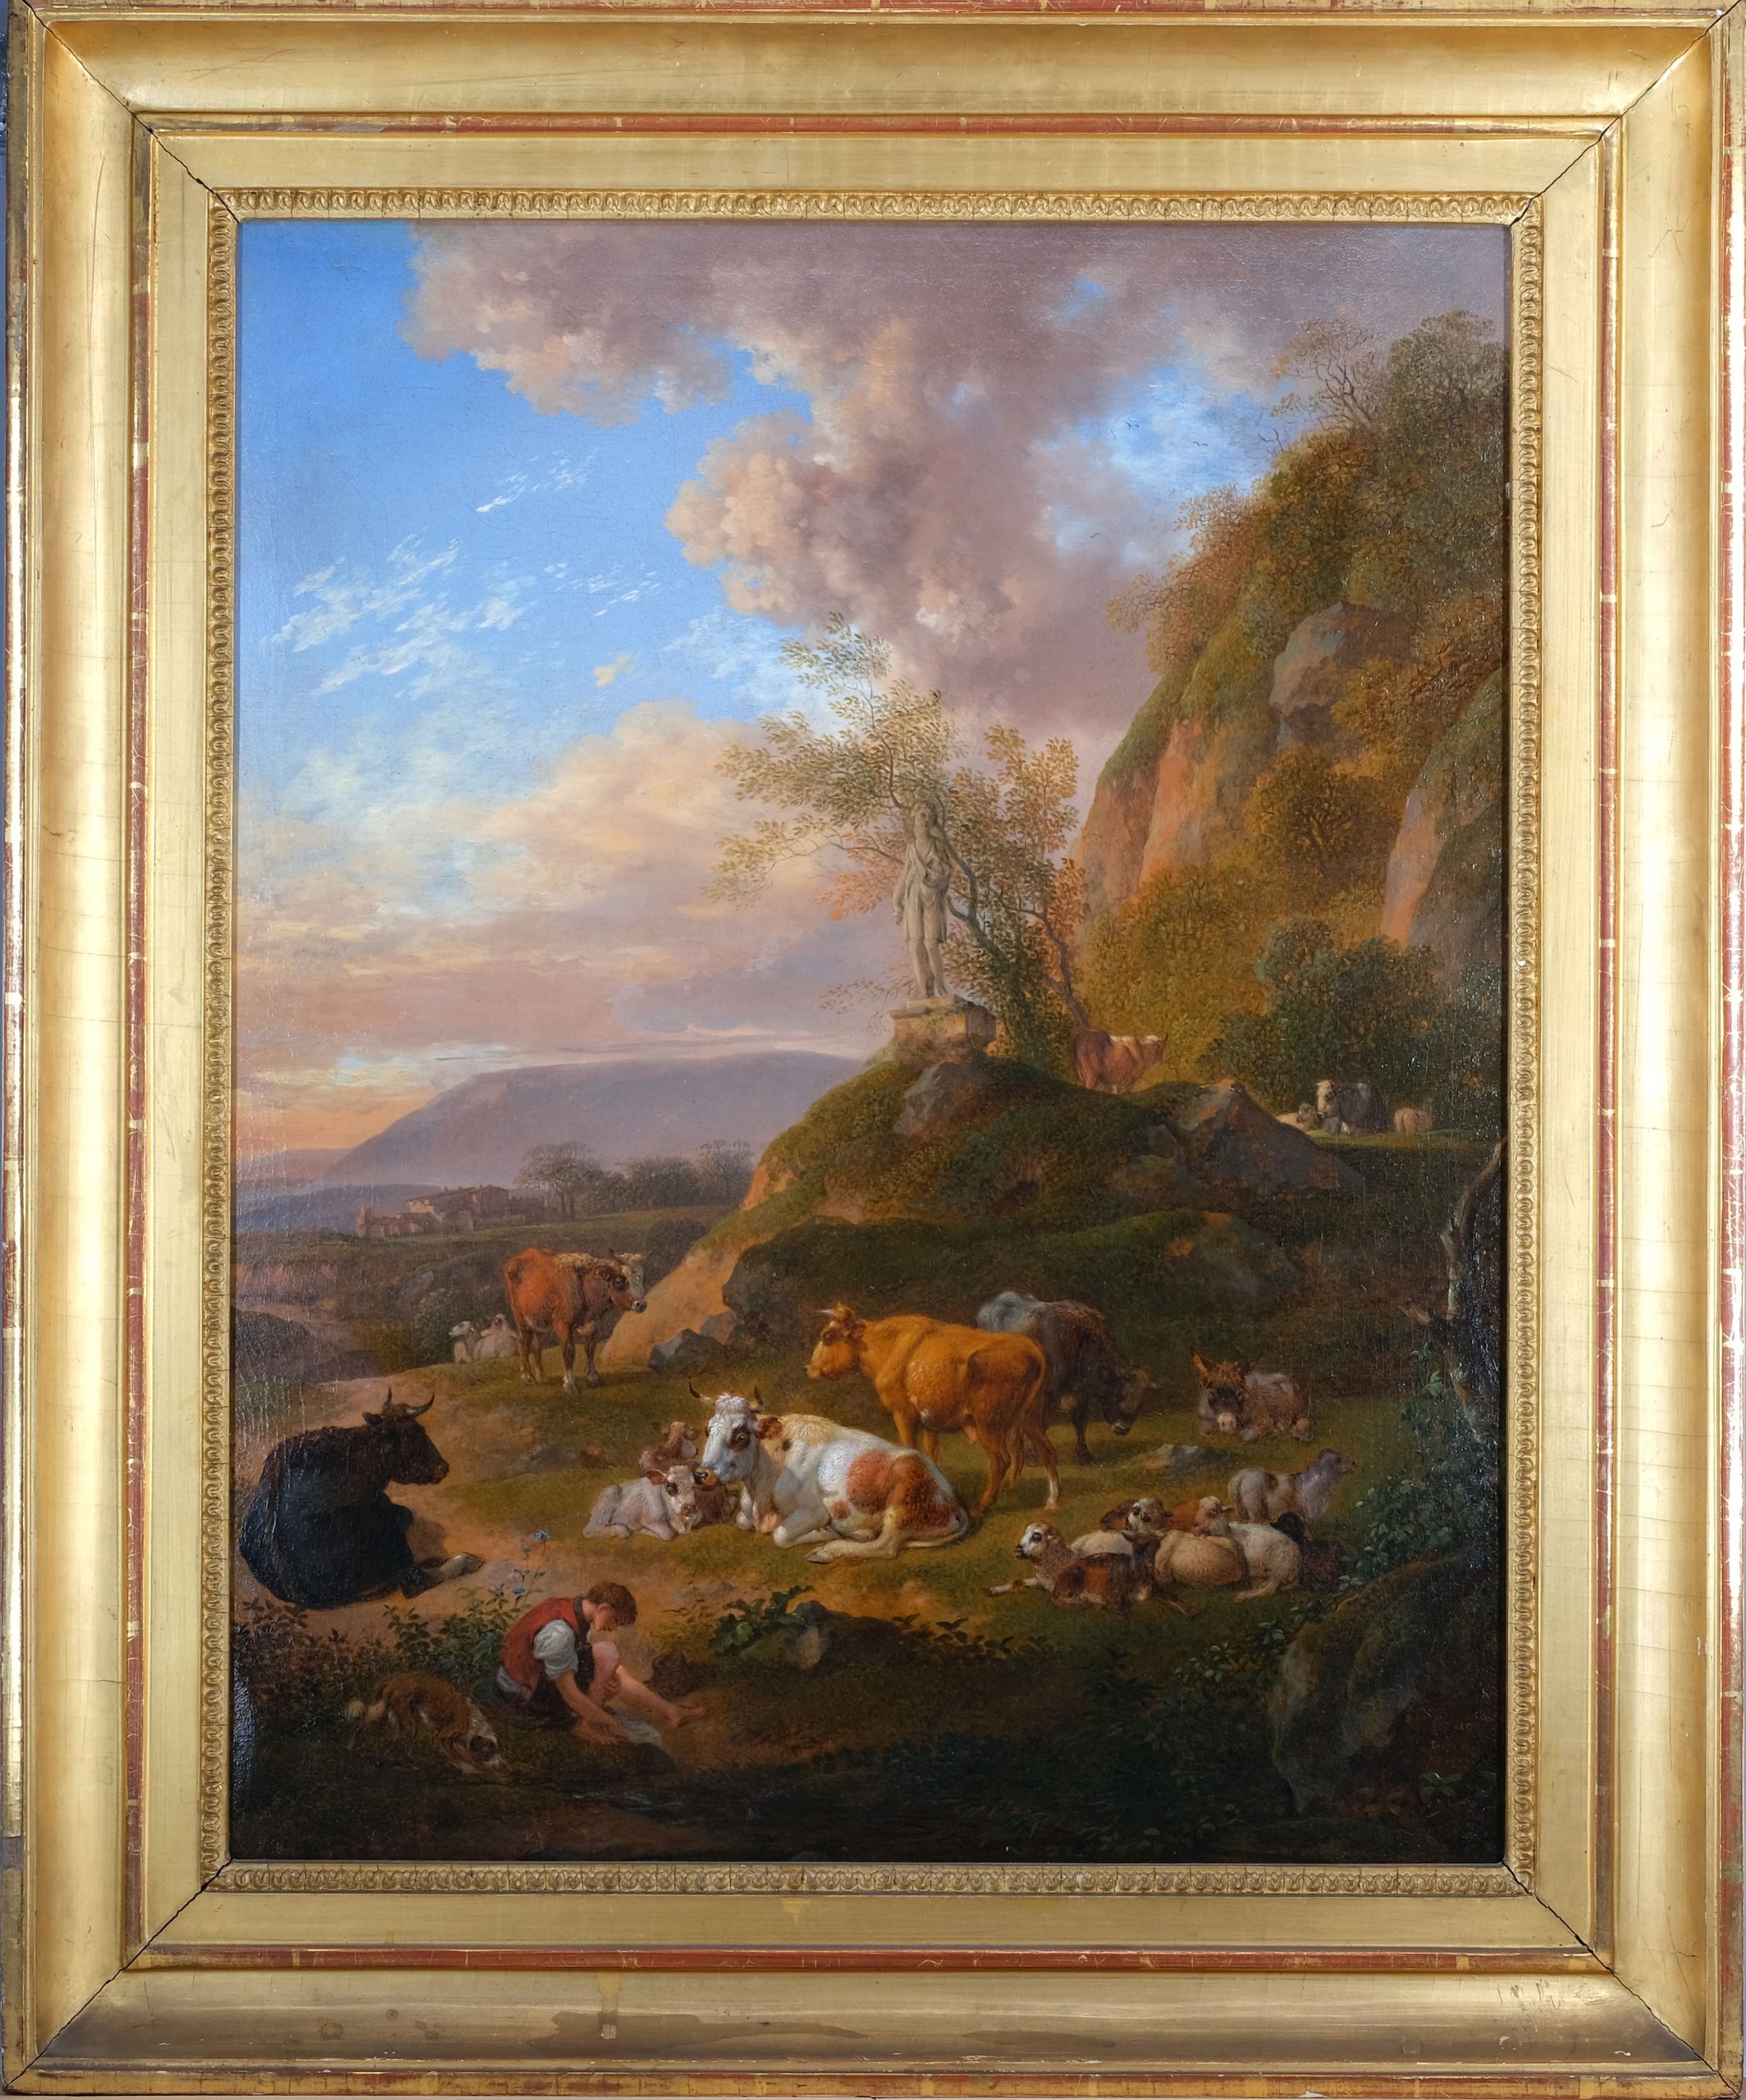 Hirtenknabe Italienische Landschaft Johann Christian Klengel Kunsthandlung Kühne